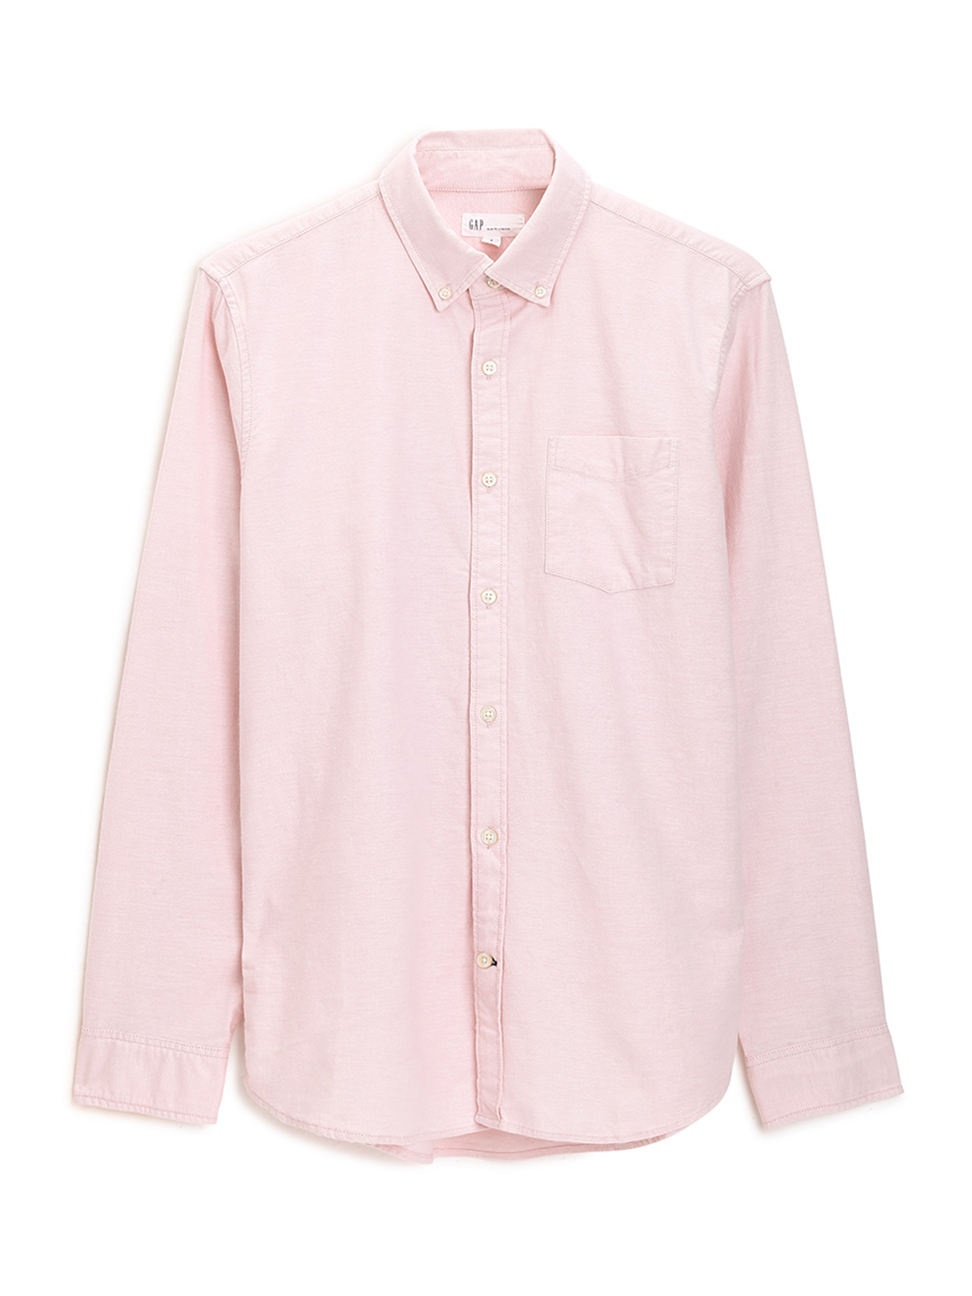 男裝|棉質舒適長袖角釦領襯衫-純粉色